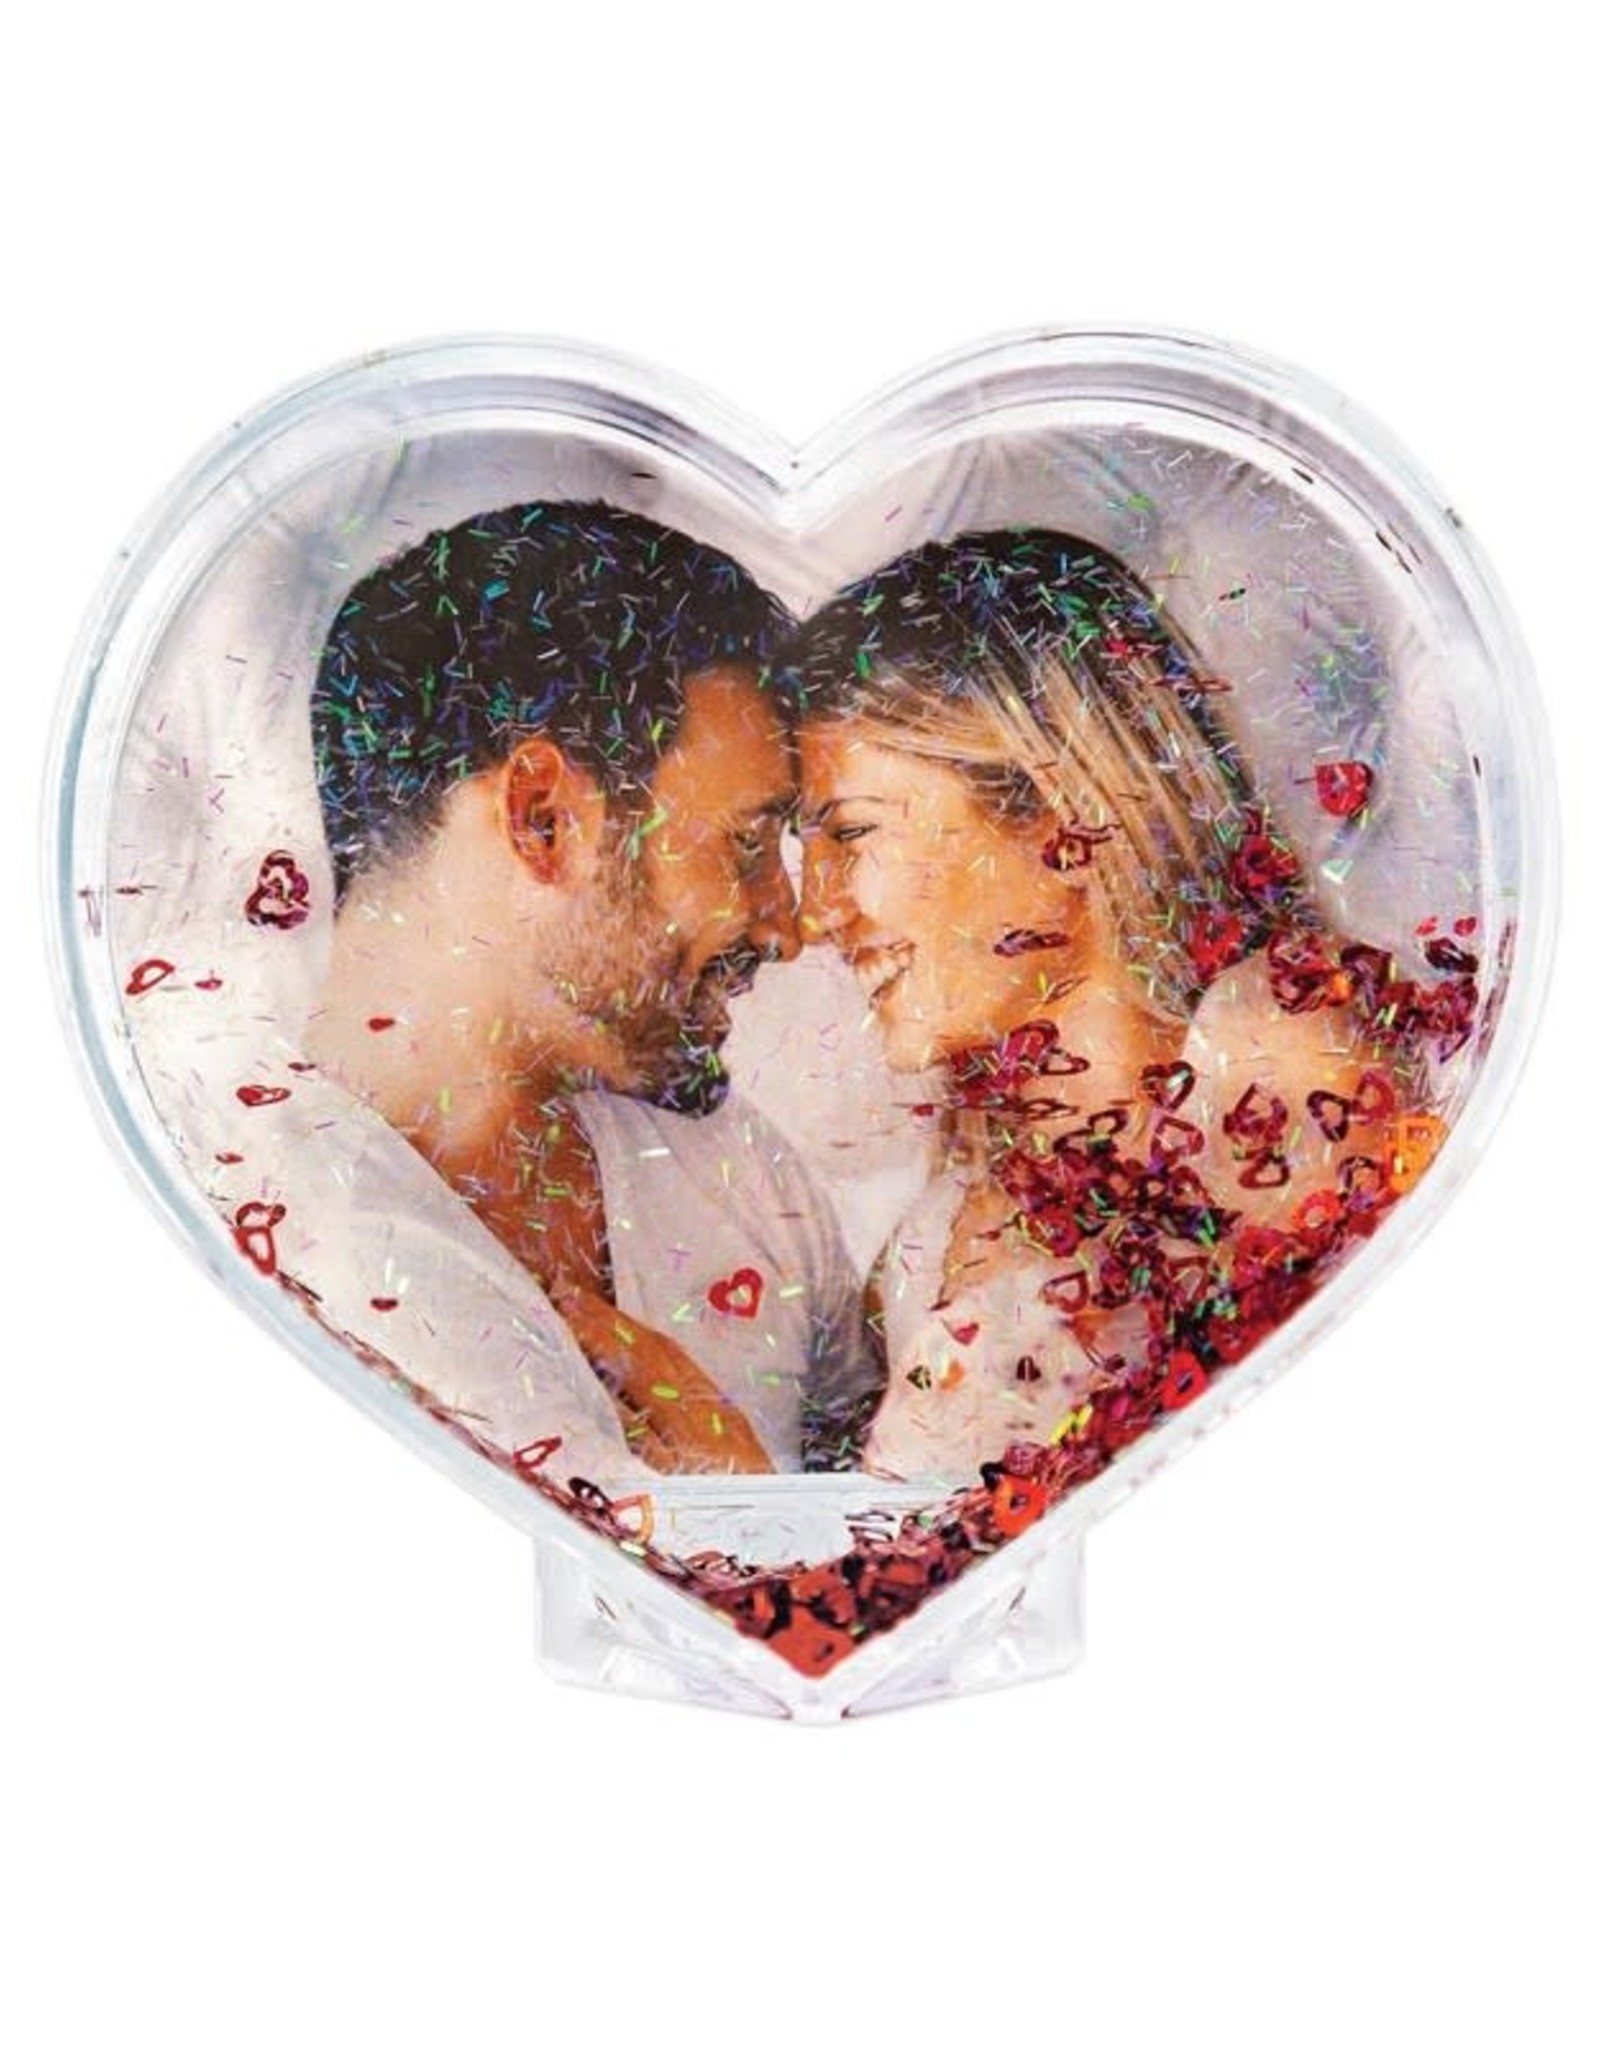 ZEP Photo Love Heart with Confetti Globe